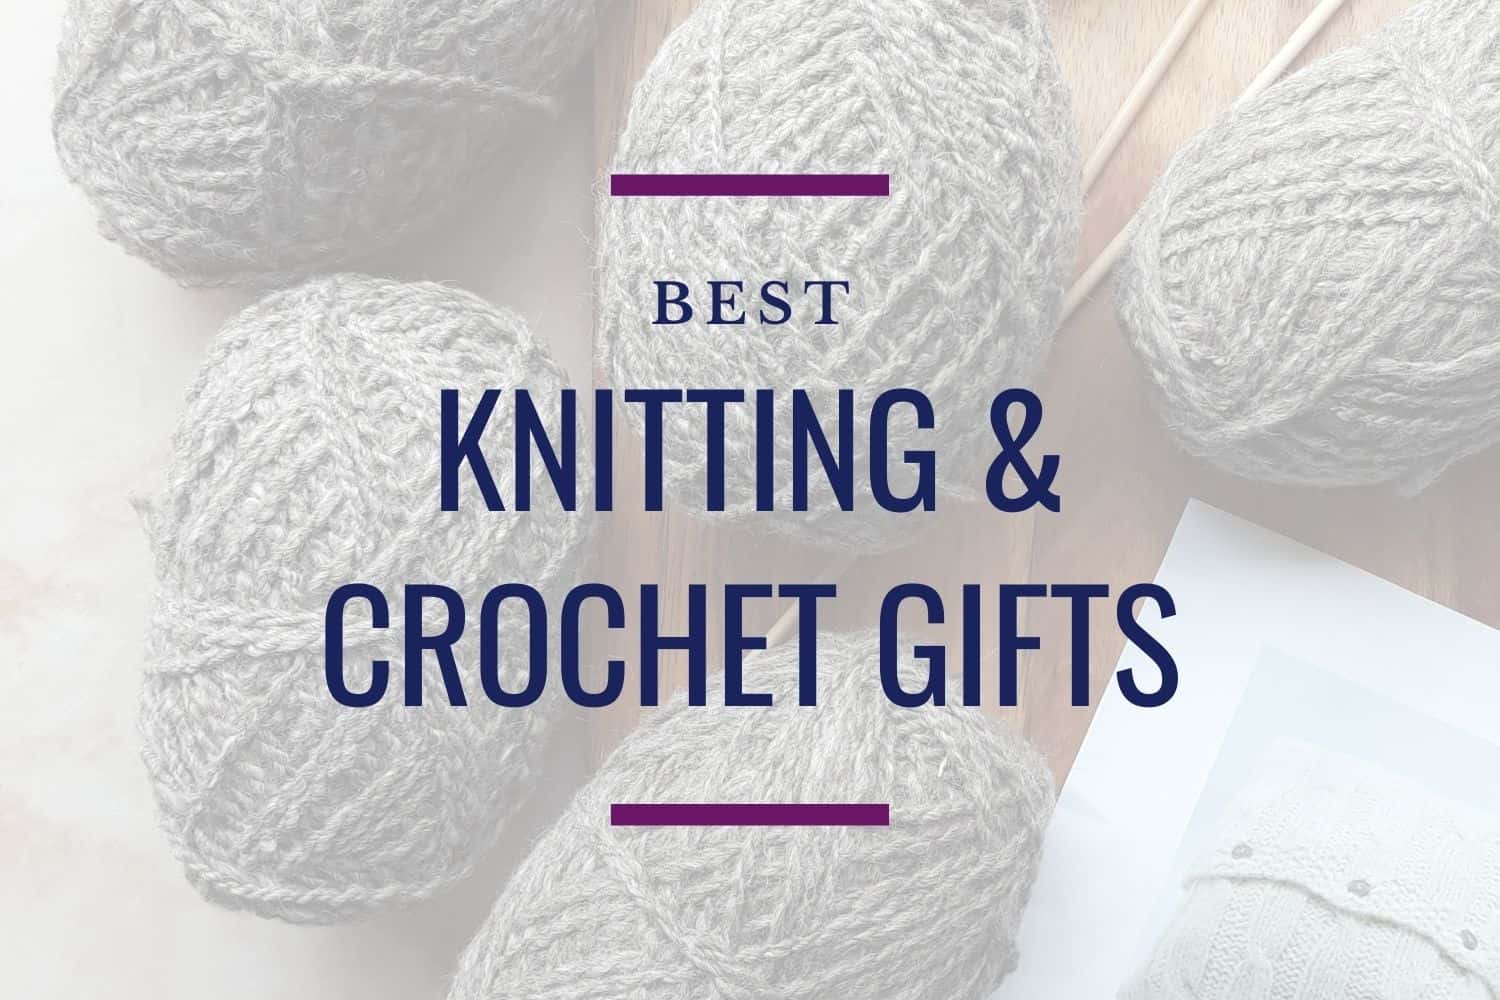 CROCHET HOOKS. GIFT SETS on Instagram: “Crochet set in stock